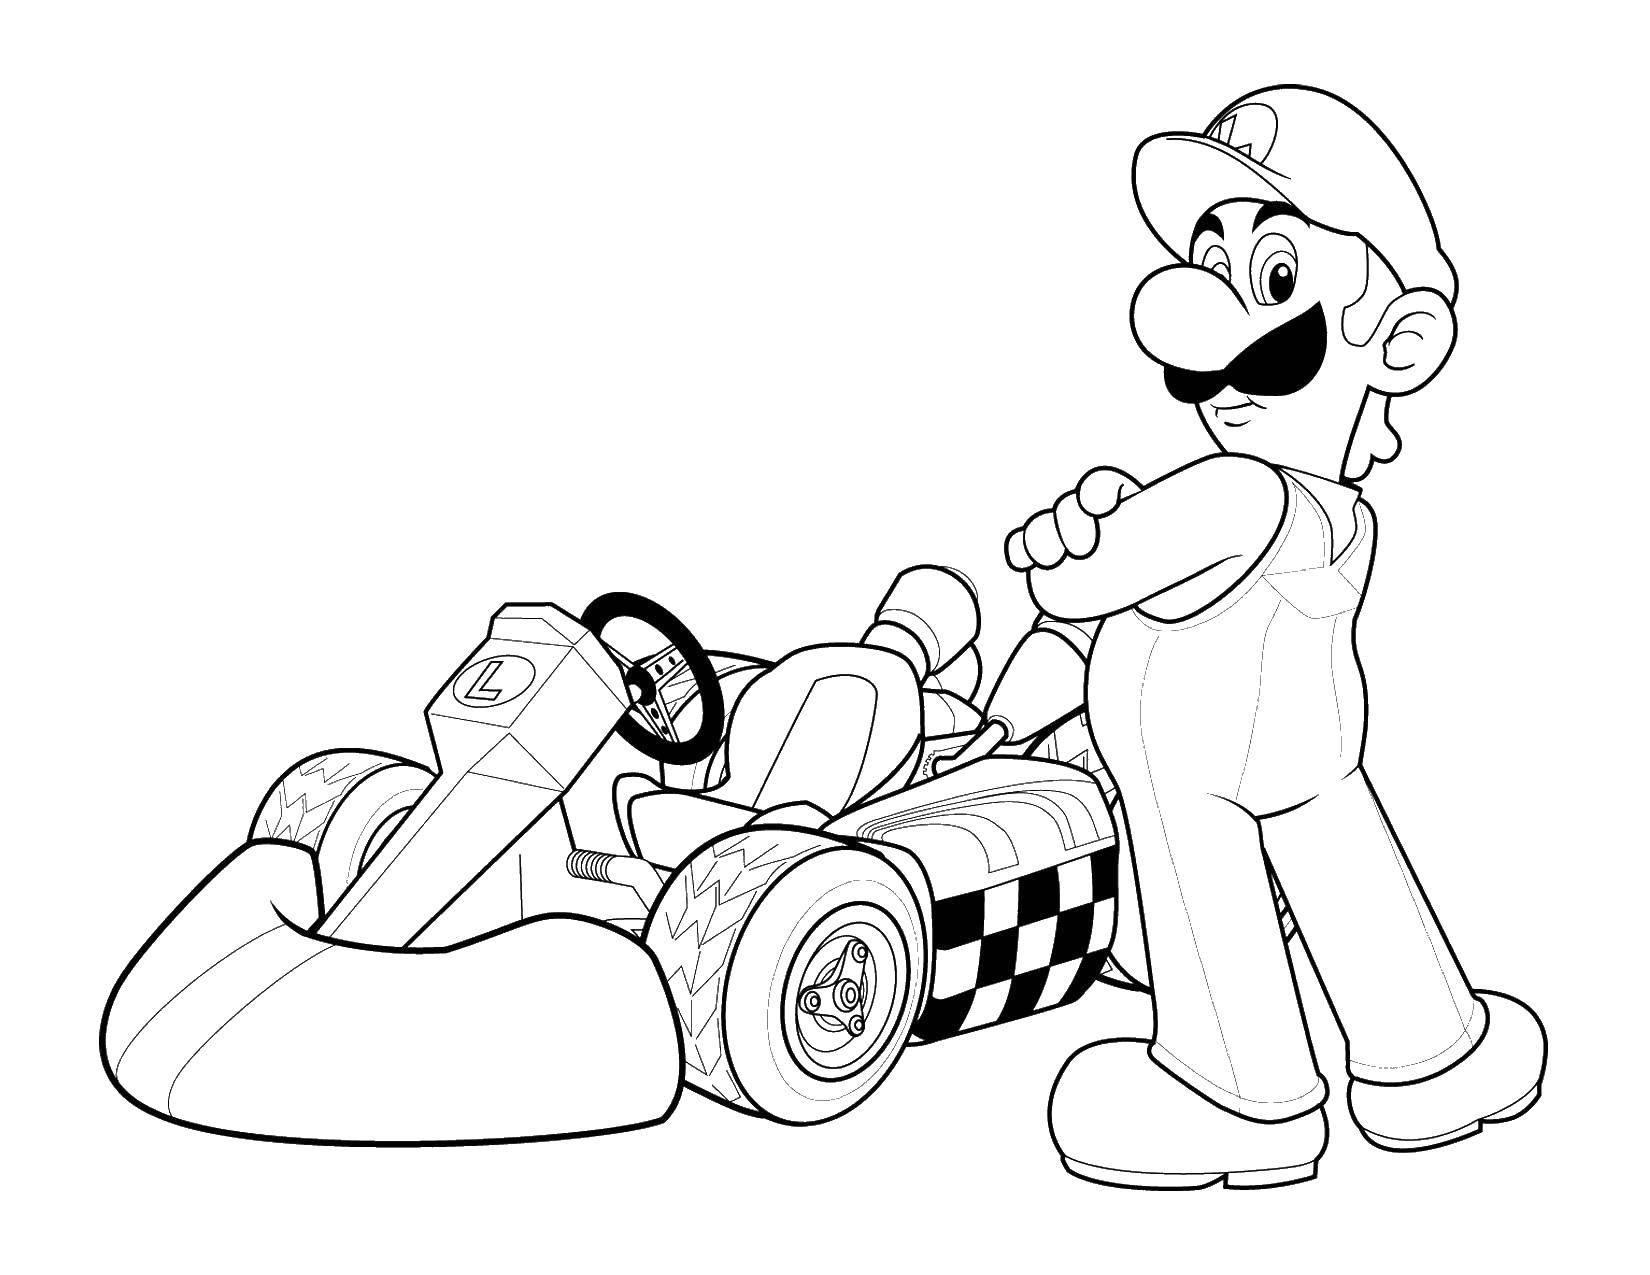 Опис: розмальовки  Супер маріо на гоночній машині. Категорія: Персонаж з гри. Теги:  Супер Маріо.